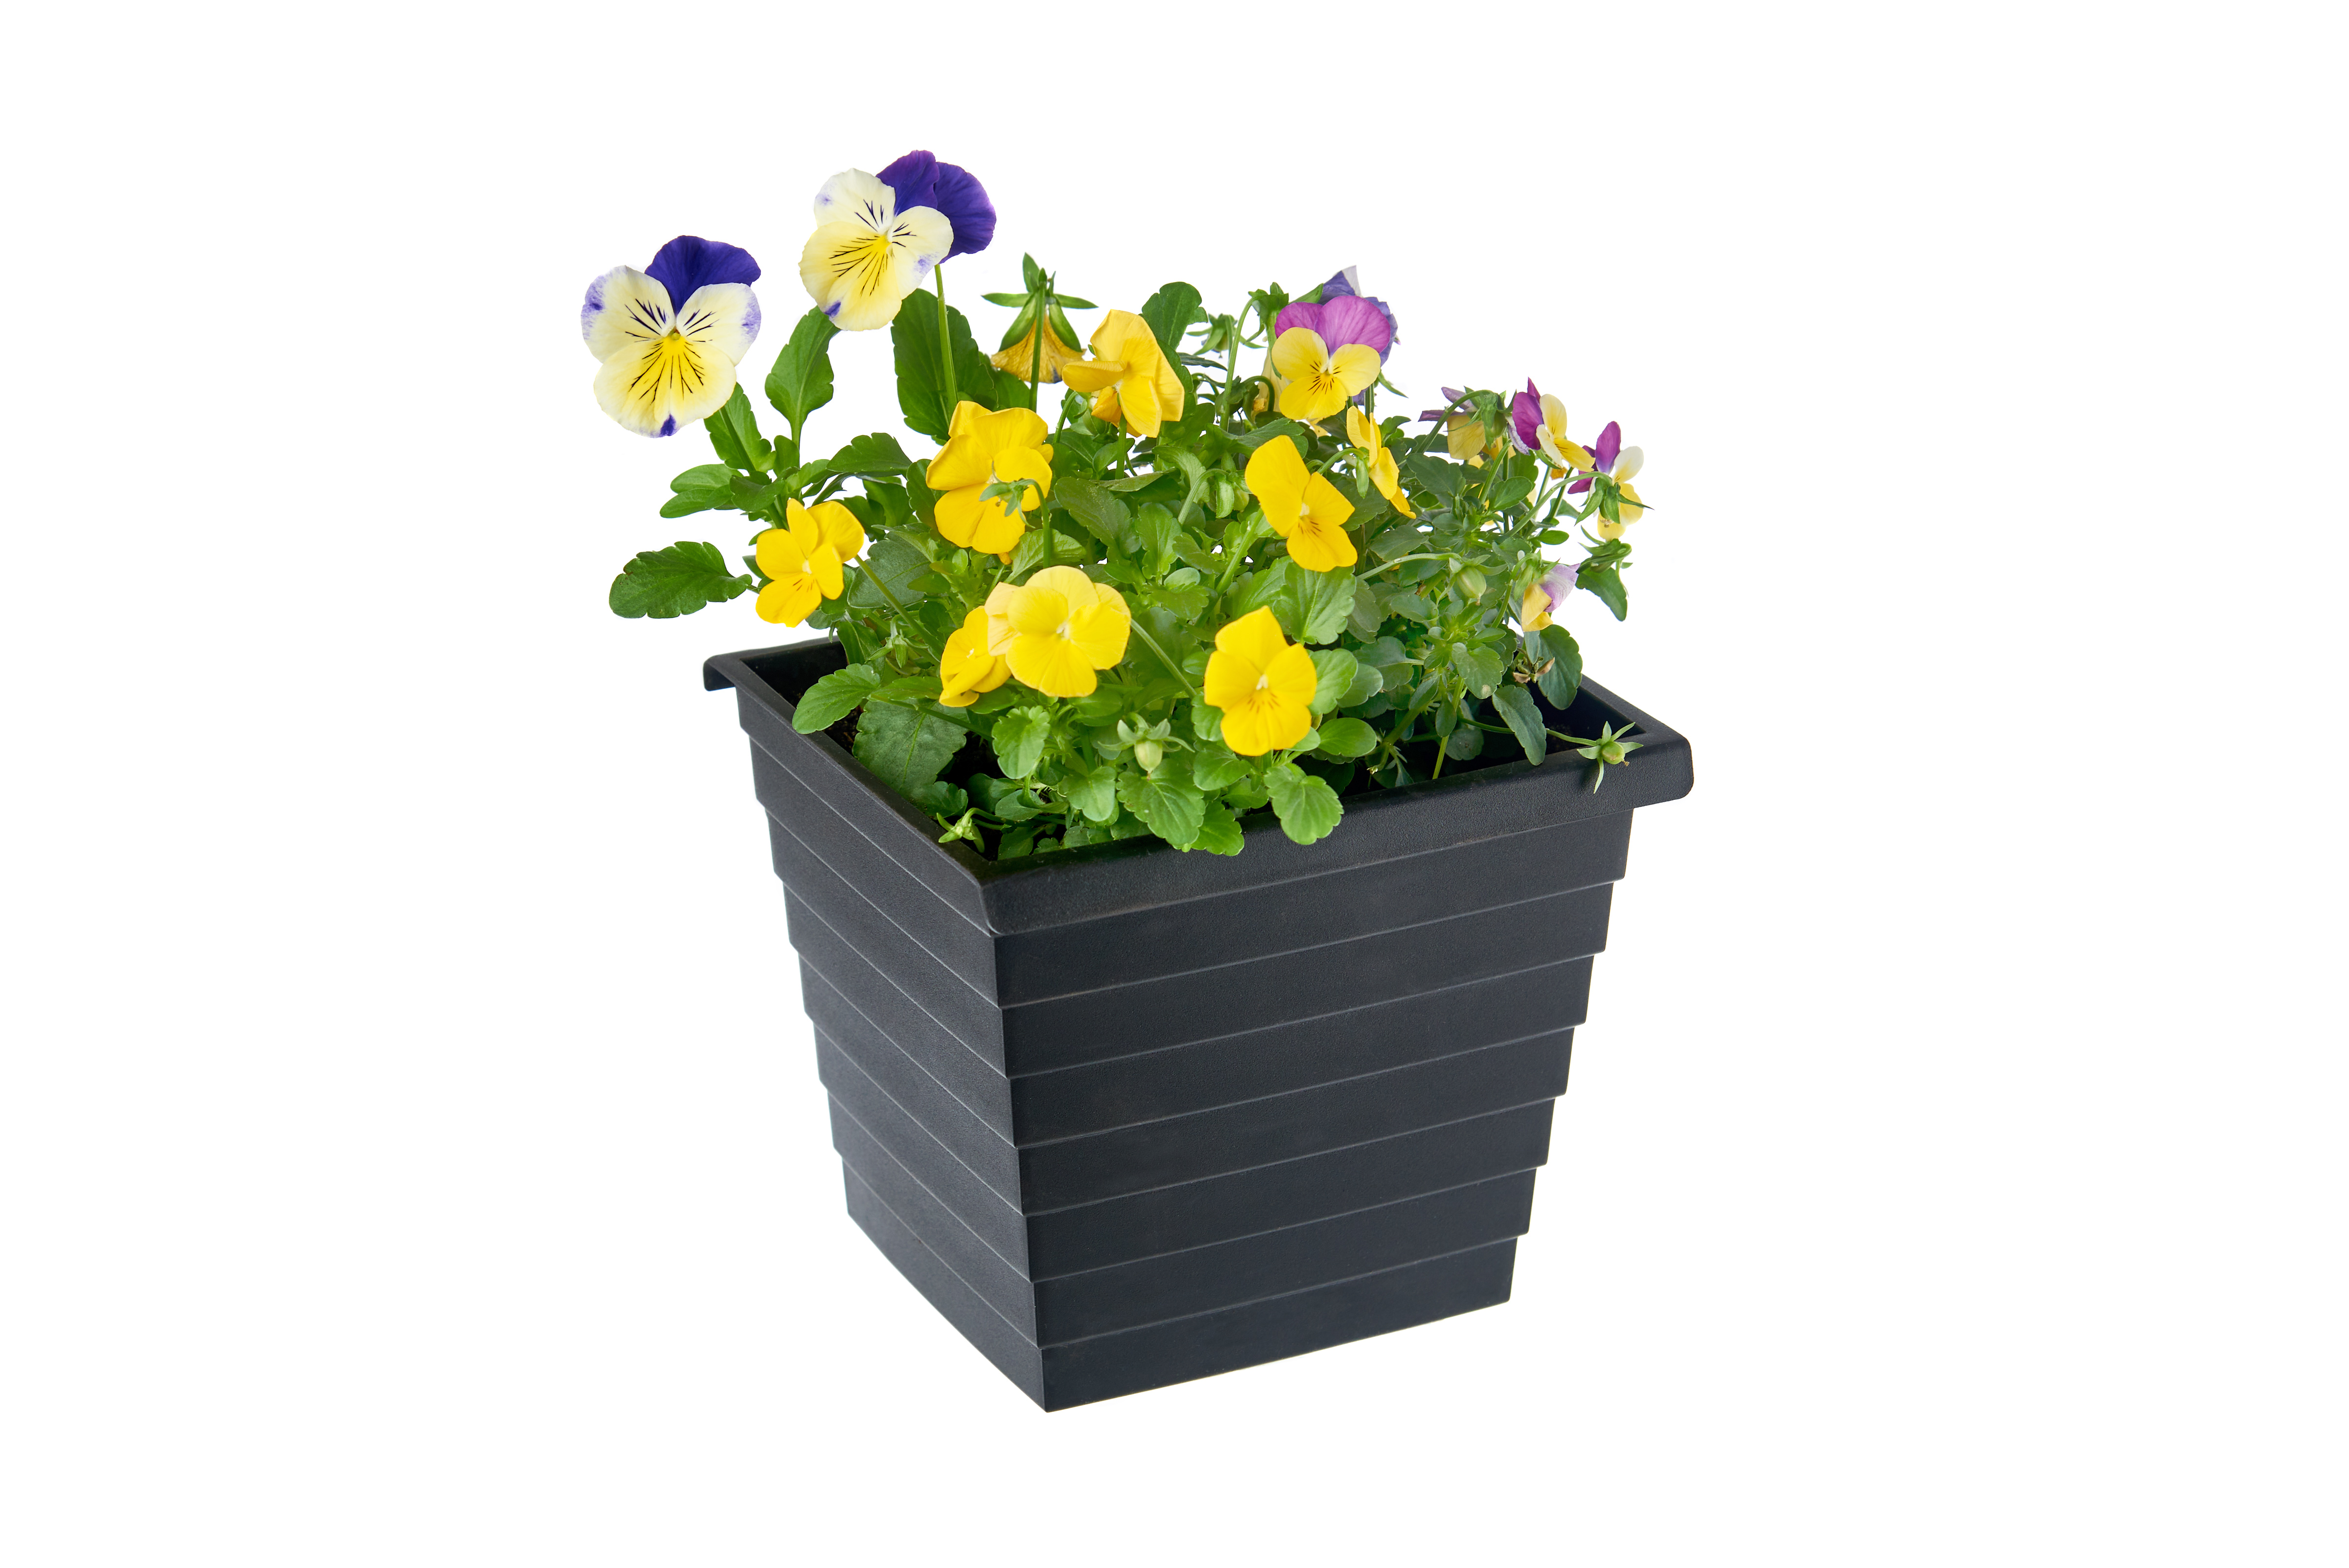 gabioka flowerbox simple